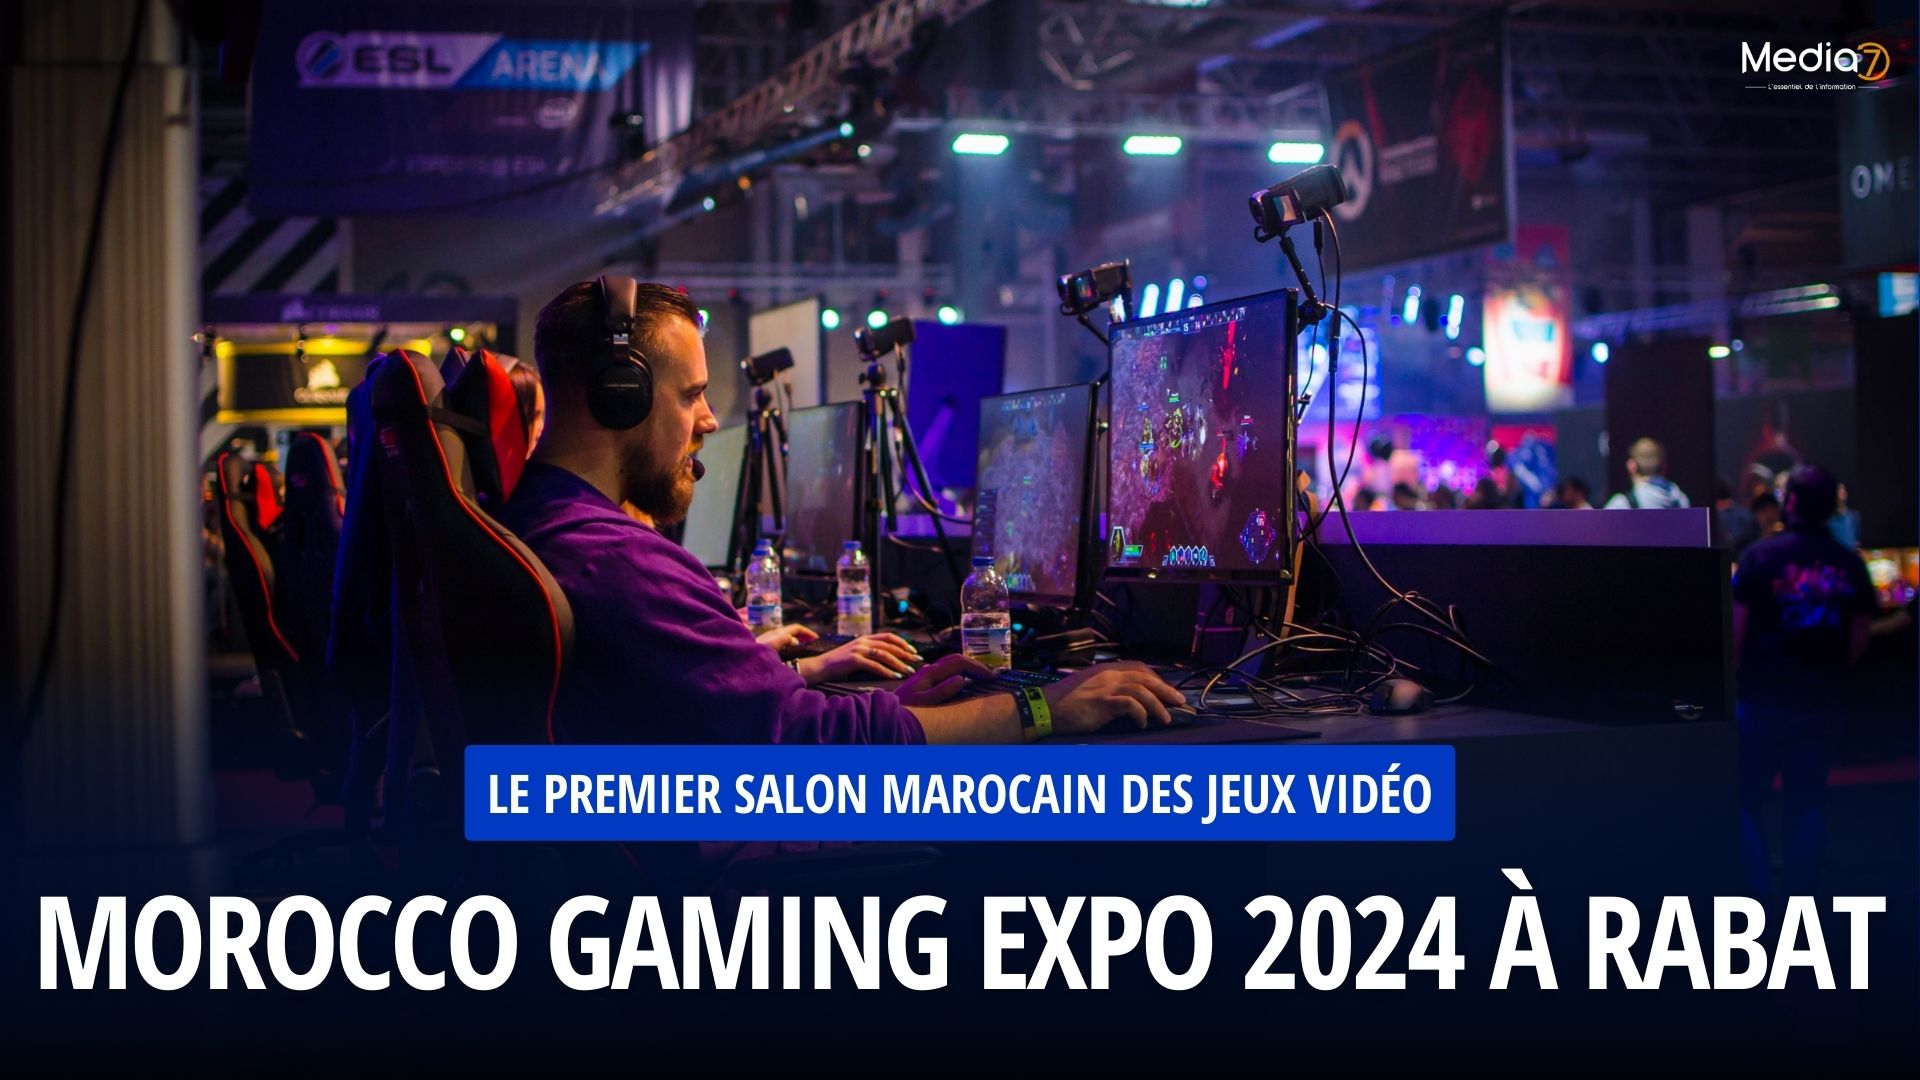 Le Premier Salon Marocain des Jeux Vidéo : Morocco Gaming Expo 2024 à Rabat